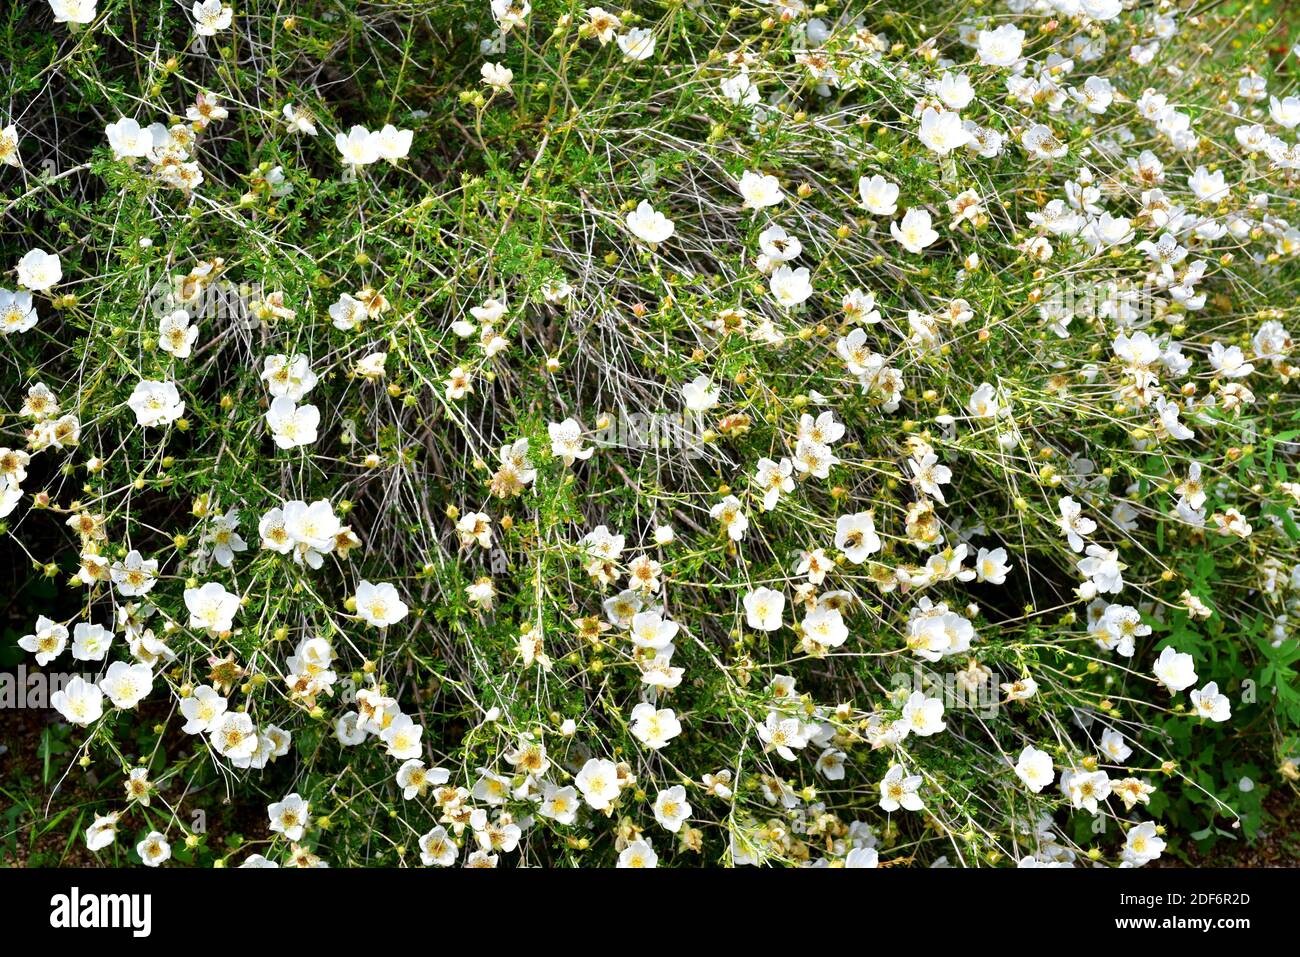 Apache plume (Fallugia paradoxa) is a shrub native to southwestern USA and northwestern Mexico. Flowers detail. Stock Photo